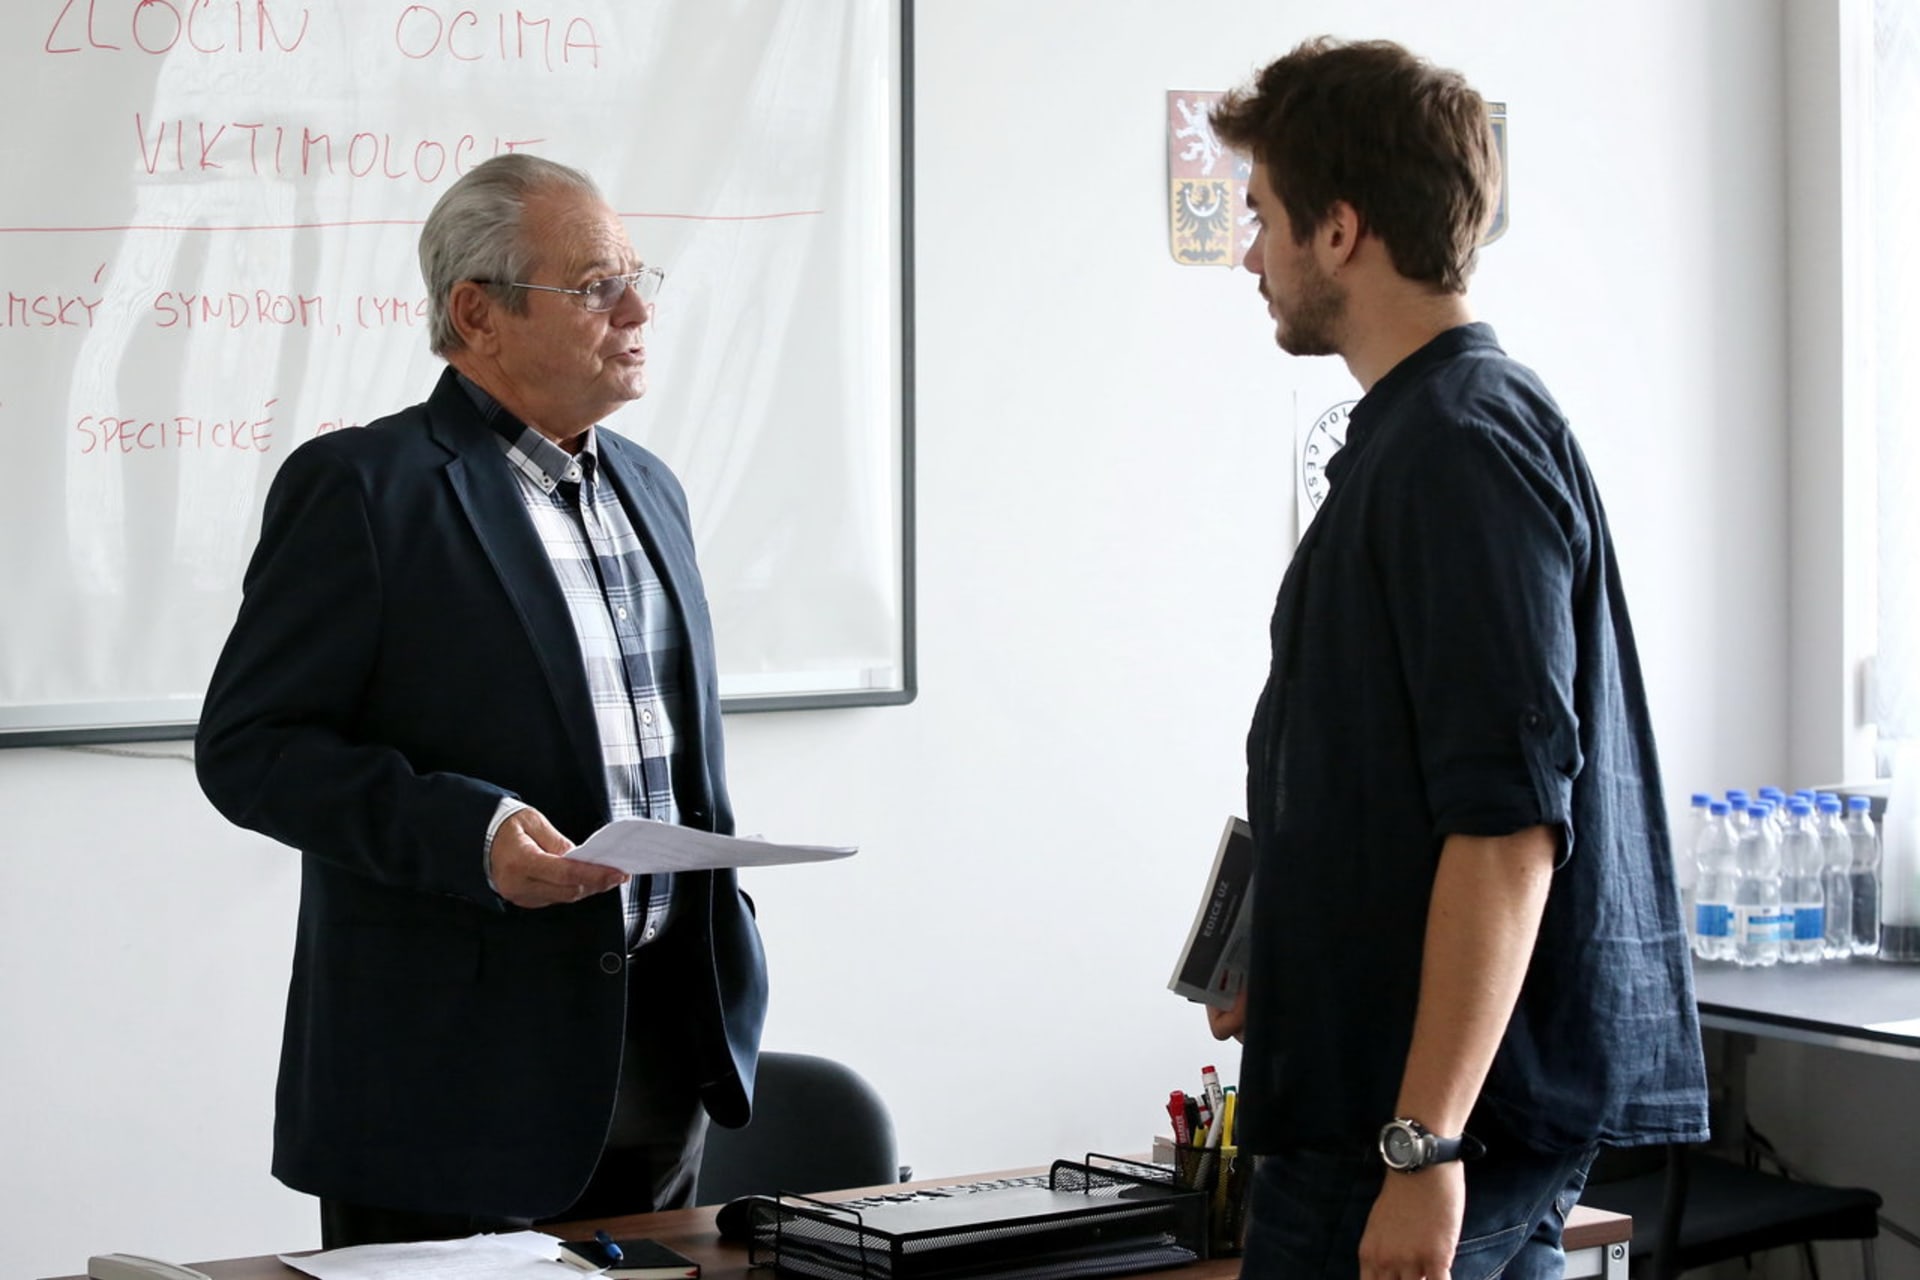 Milan Kňažko si zahrál také v seriálu TV Prima V.I.P. vraždy. Ztvárnil v něm postavu psychologa. 